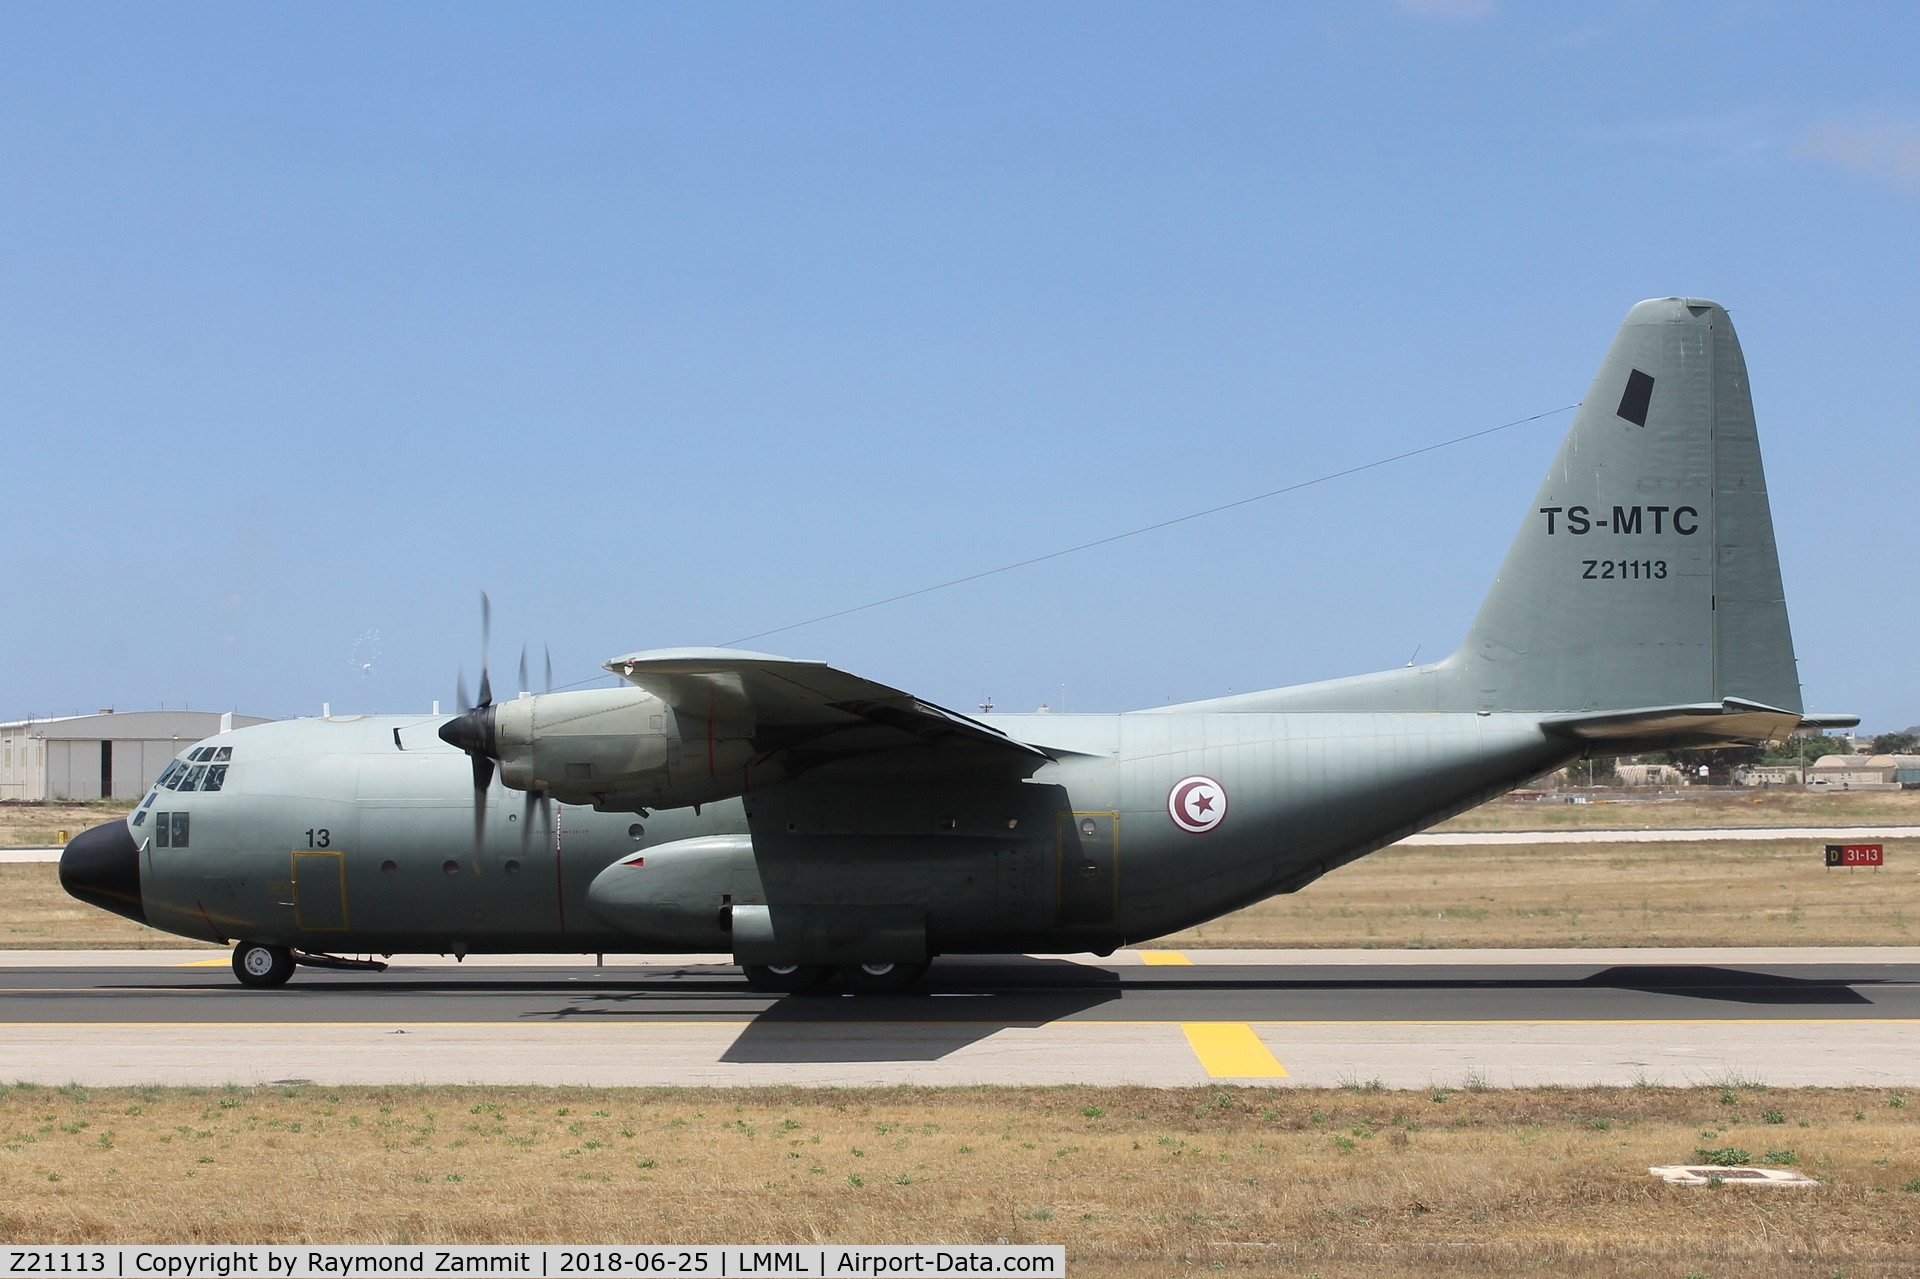 Z21113, Lockheed C-130B Hercules C/N 182-3625, Lockheed C-130B Hercules Z21113 TC-MTC Tunisian Air Force